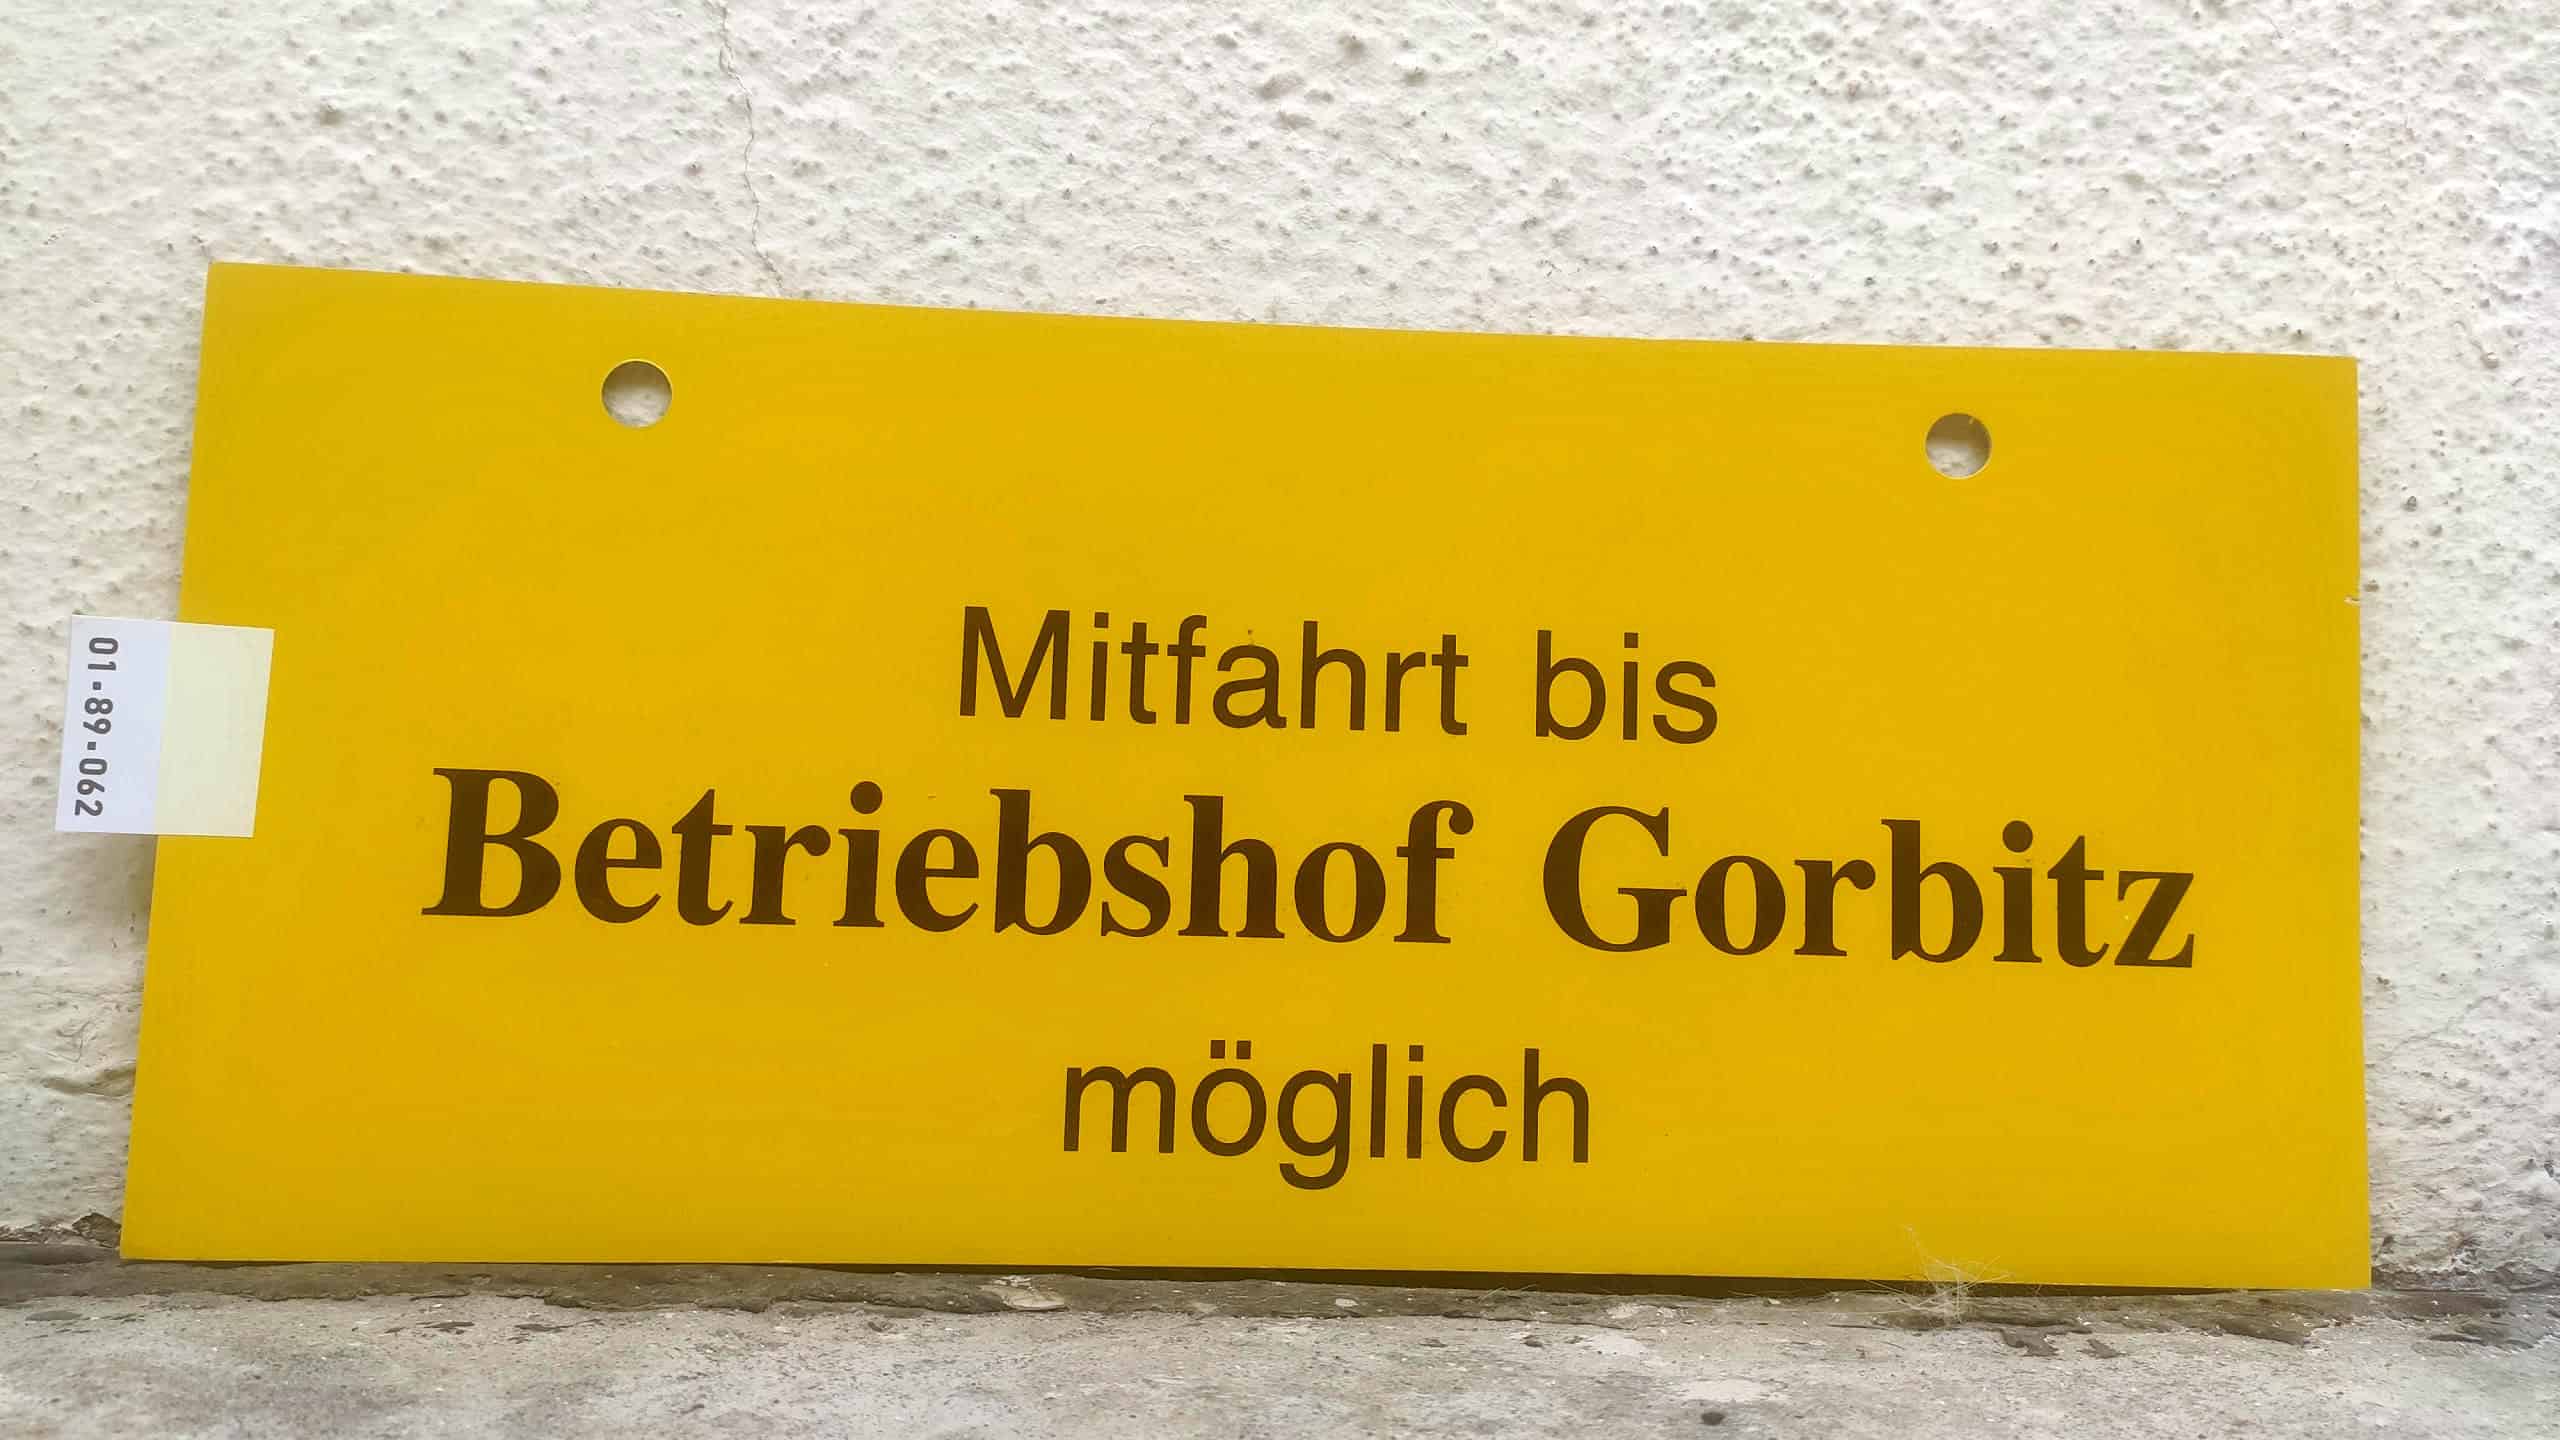 Mitfahrt bis Betriebshof Gorbitz möglich